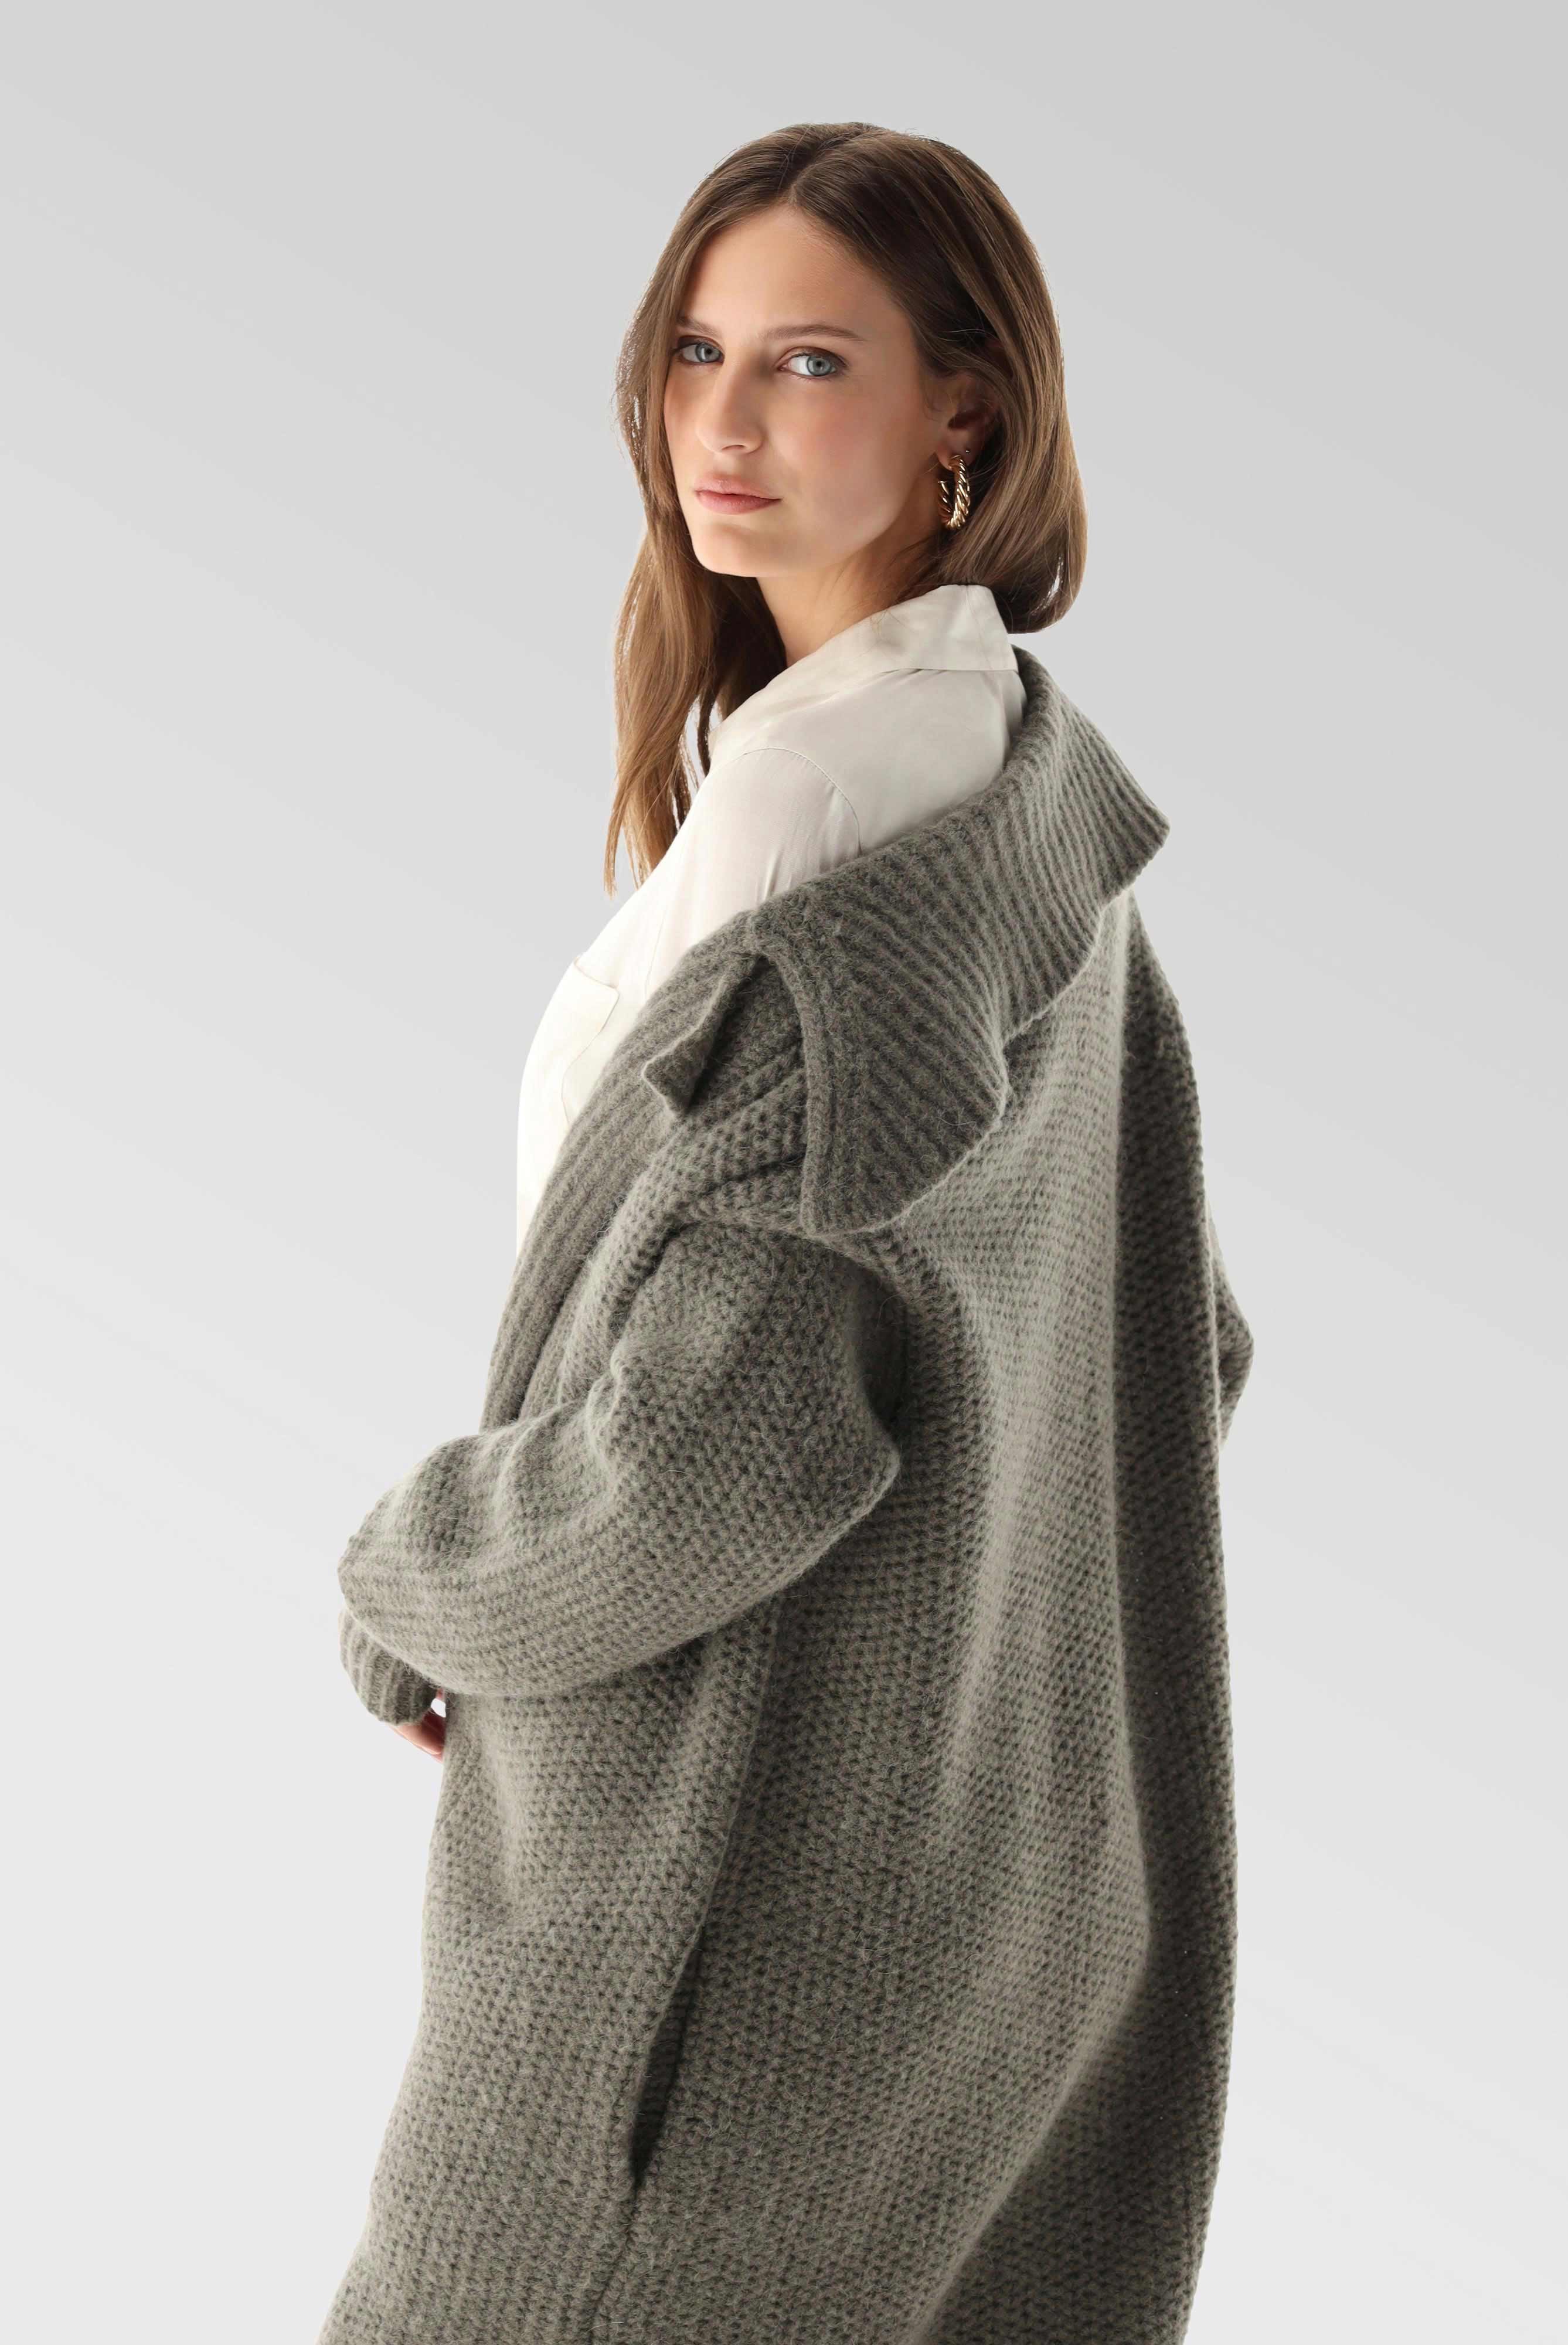 Coats+Knit Jacket with Alpaca+09.9942..S00227.960.S